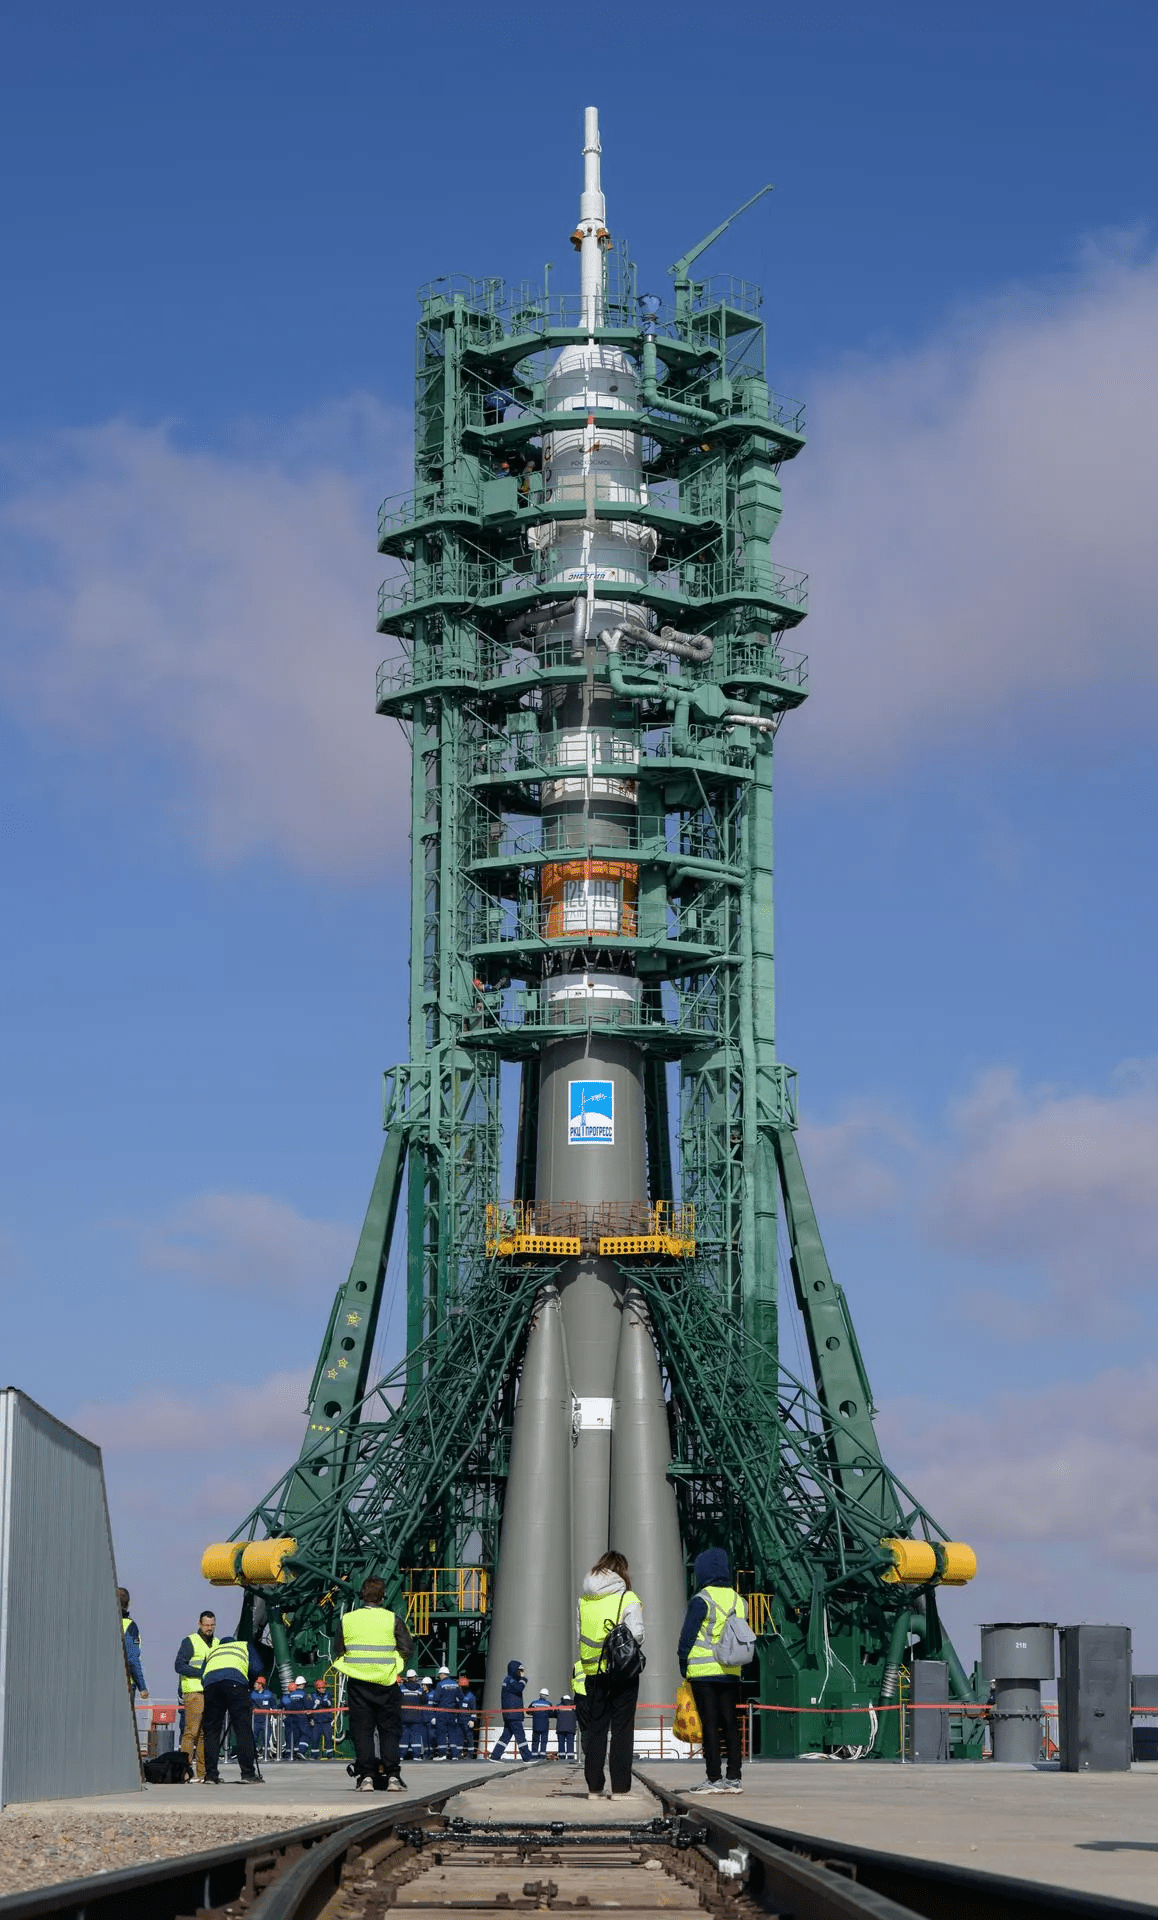 Bộ ảnh quyền lực: Nga nâng tên lửa Soyuz lên bệ, chuẩn bị chuyến bay lịch sử - Ảnh 7.